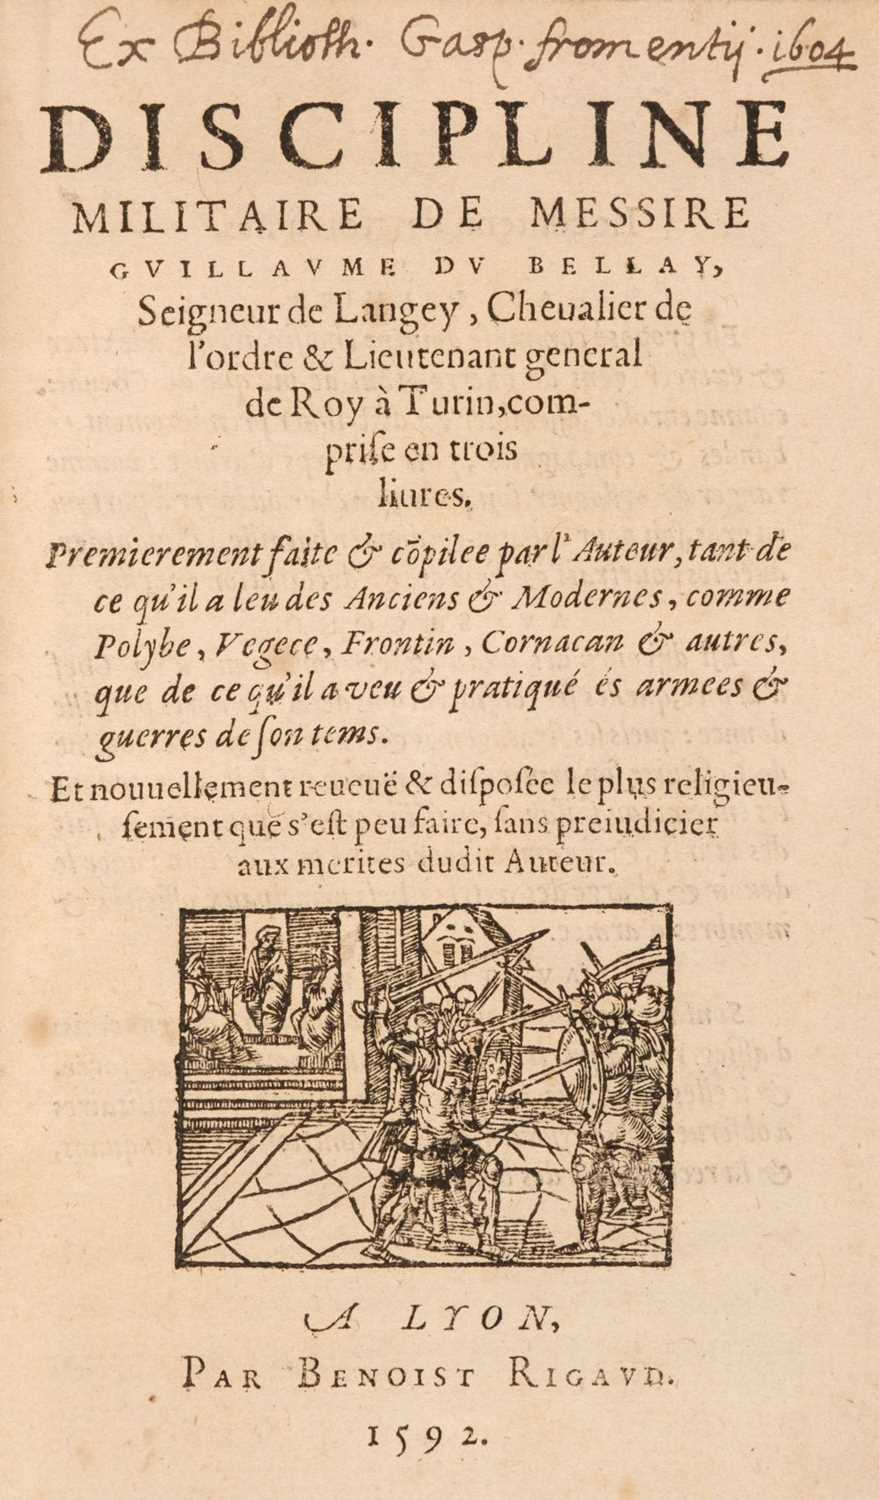 Lot 118 - Du Bellay (Guillaume). Discipline militaire de messire Guillaume Du Bellay... , 1592